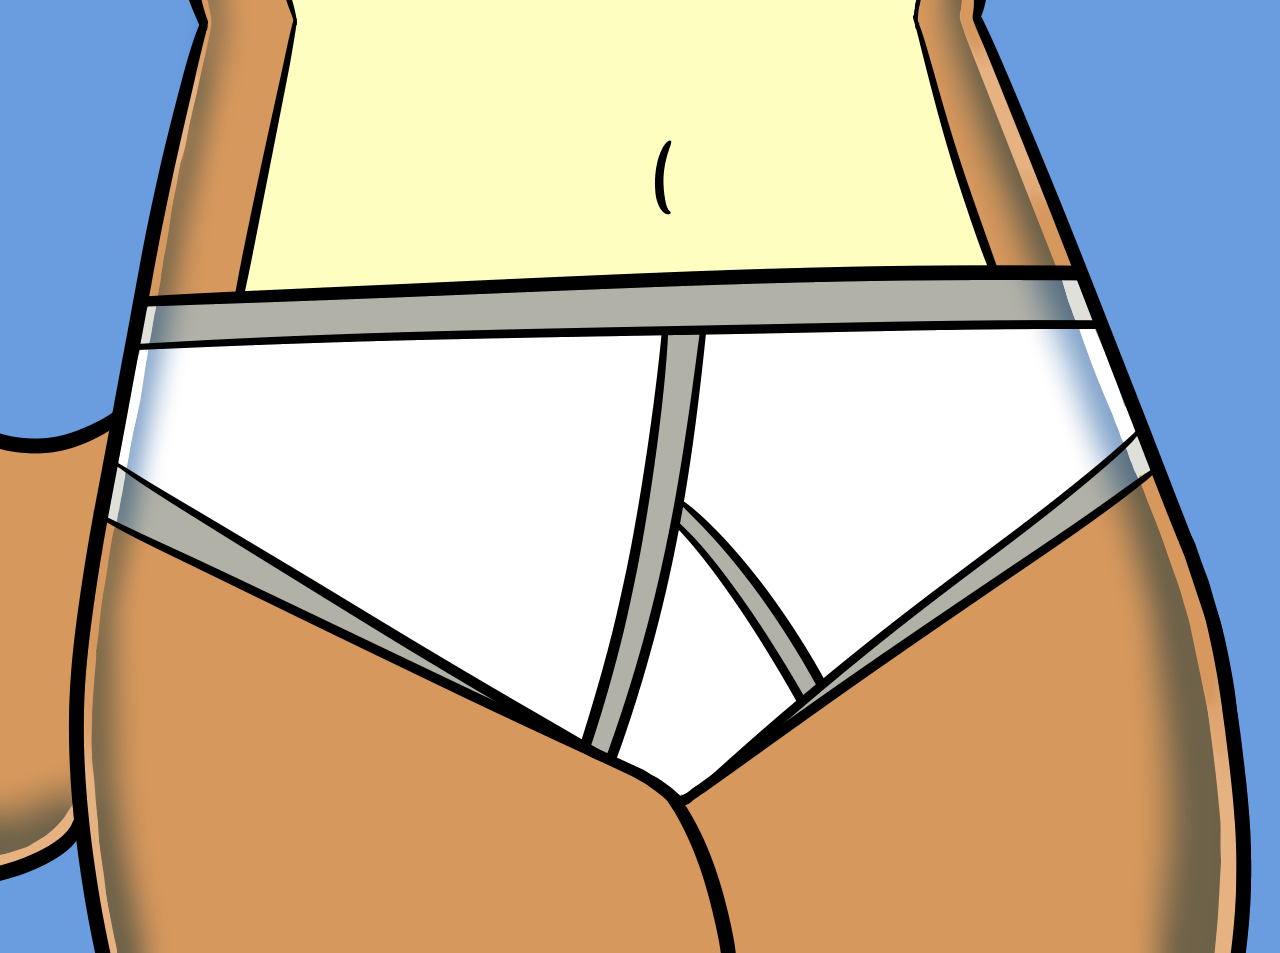 Sandy cheeks underwear - Best adult videos and photos